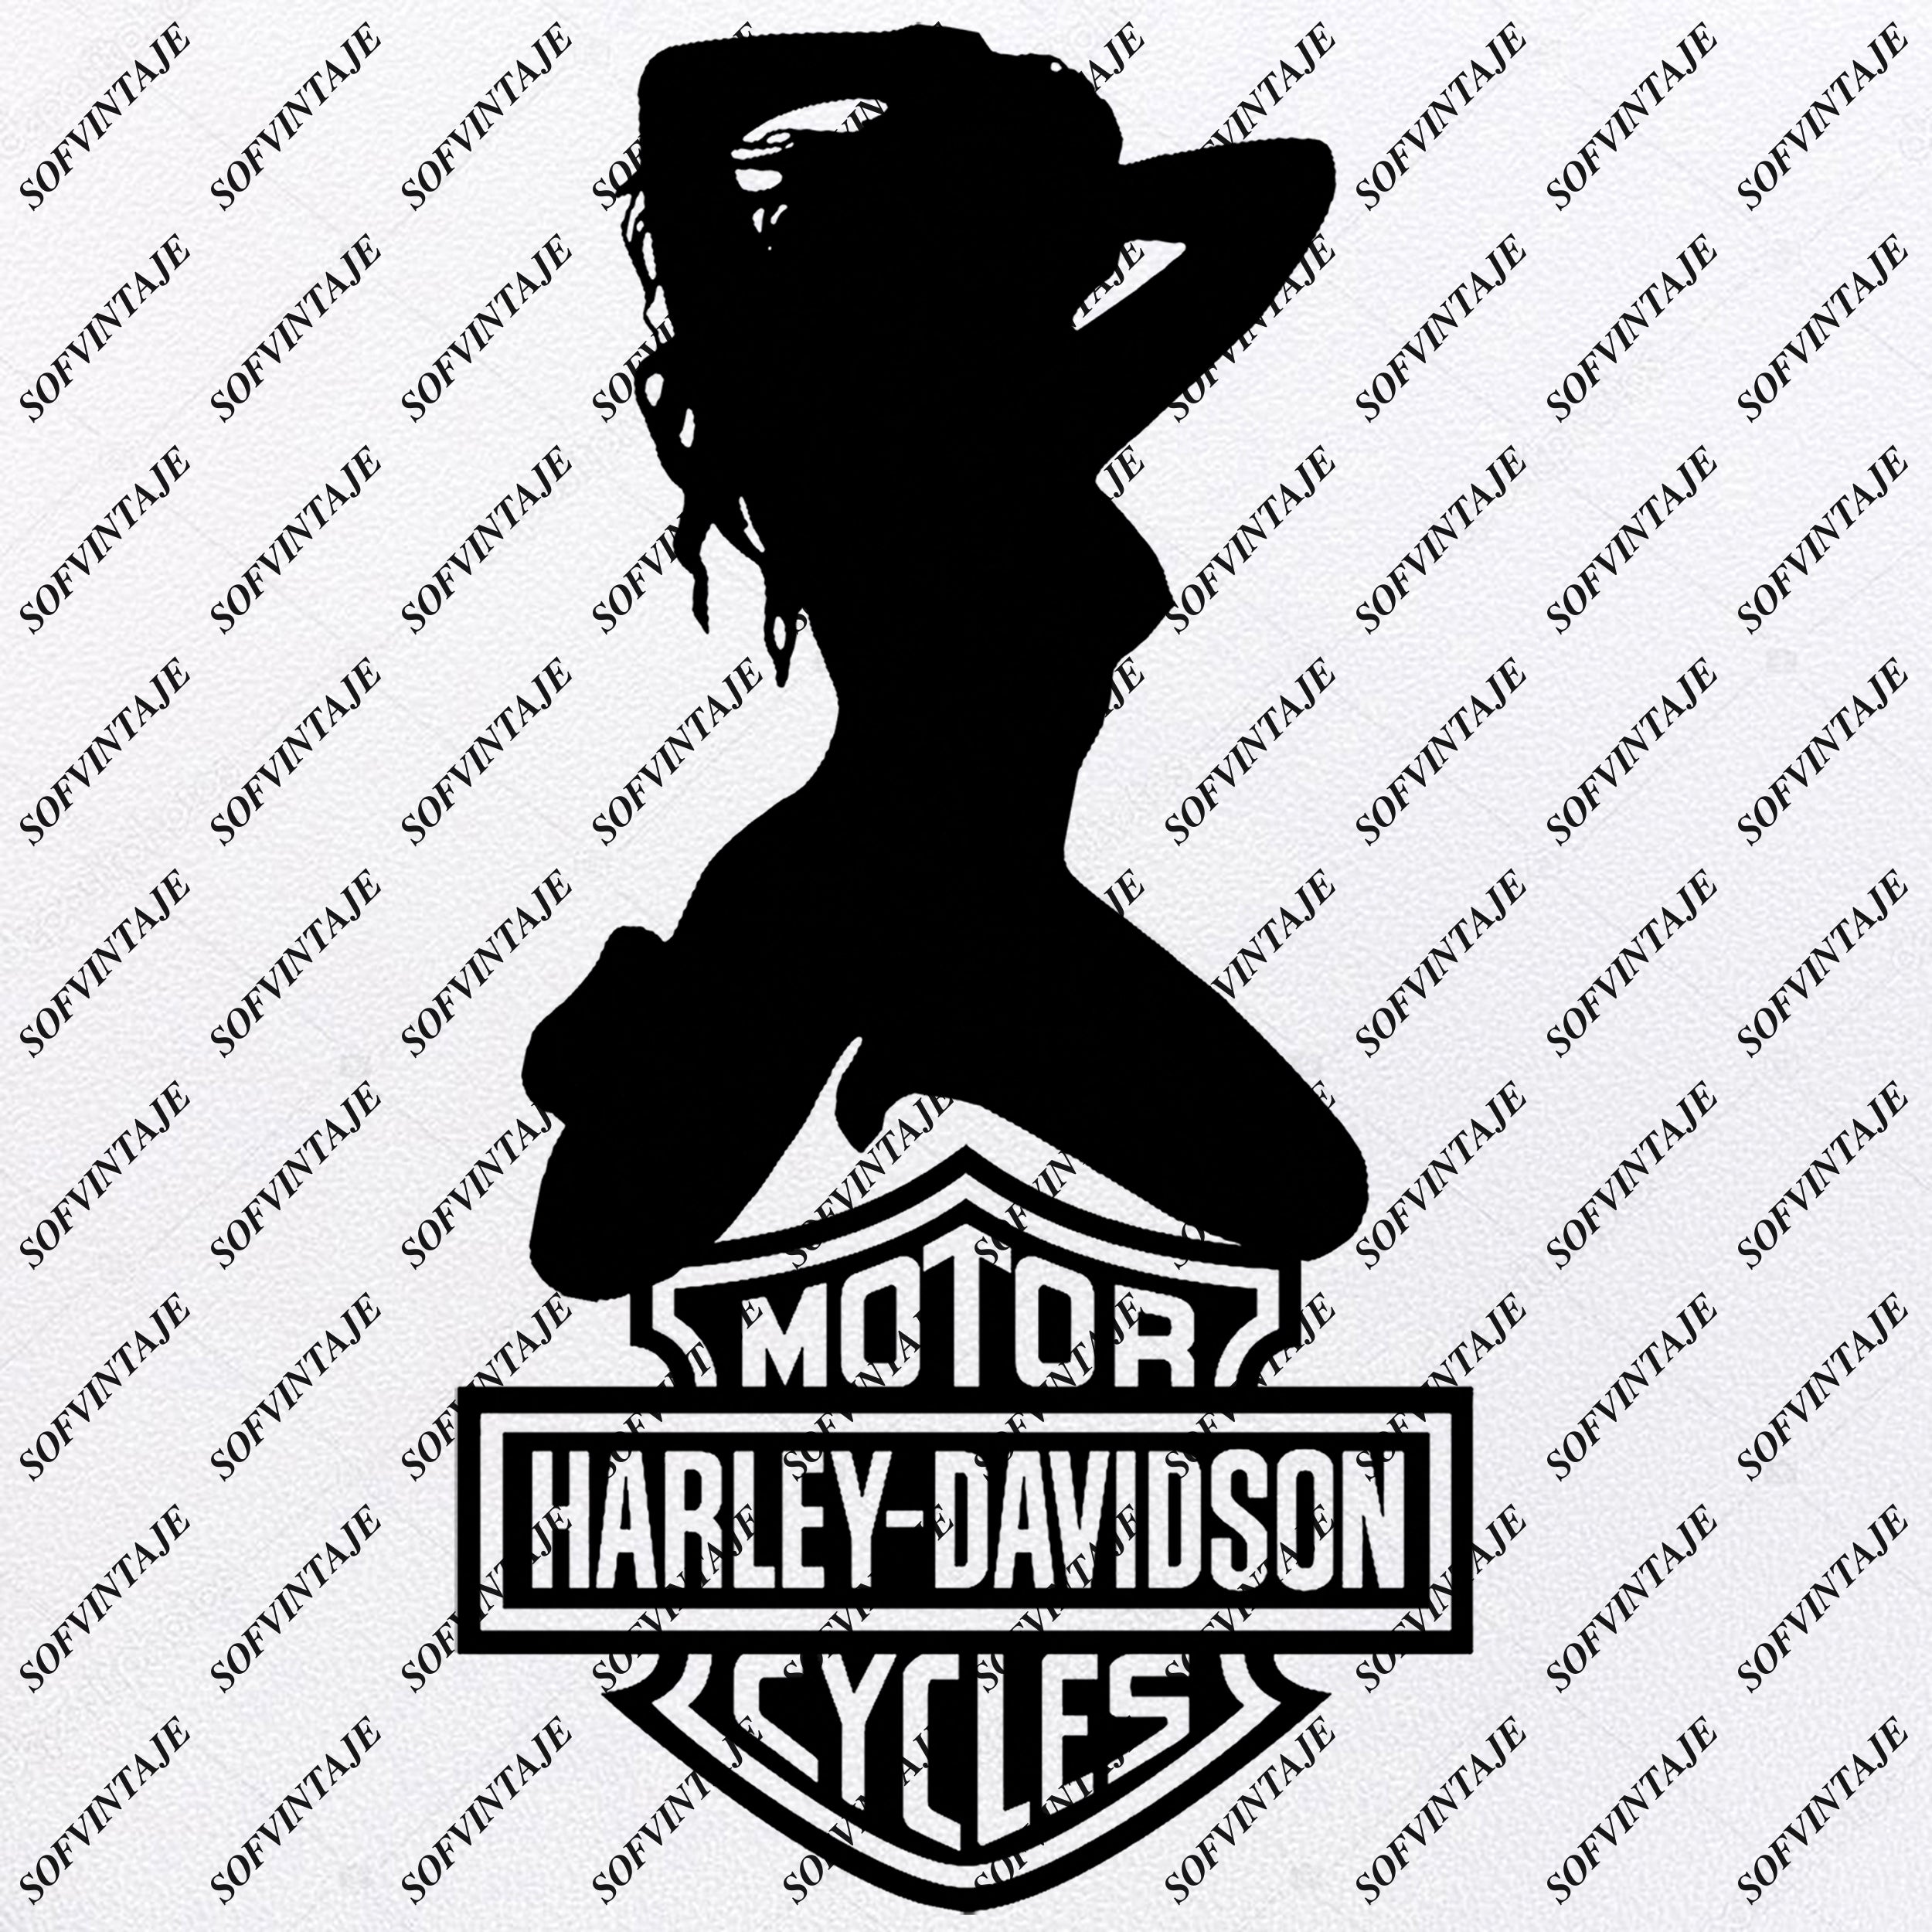 Download Girl Harley Davidson Harley Davidson Svg File Harley Davidson Sv Sofvintaje